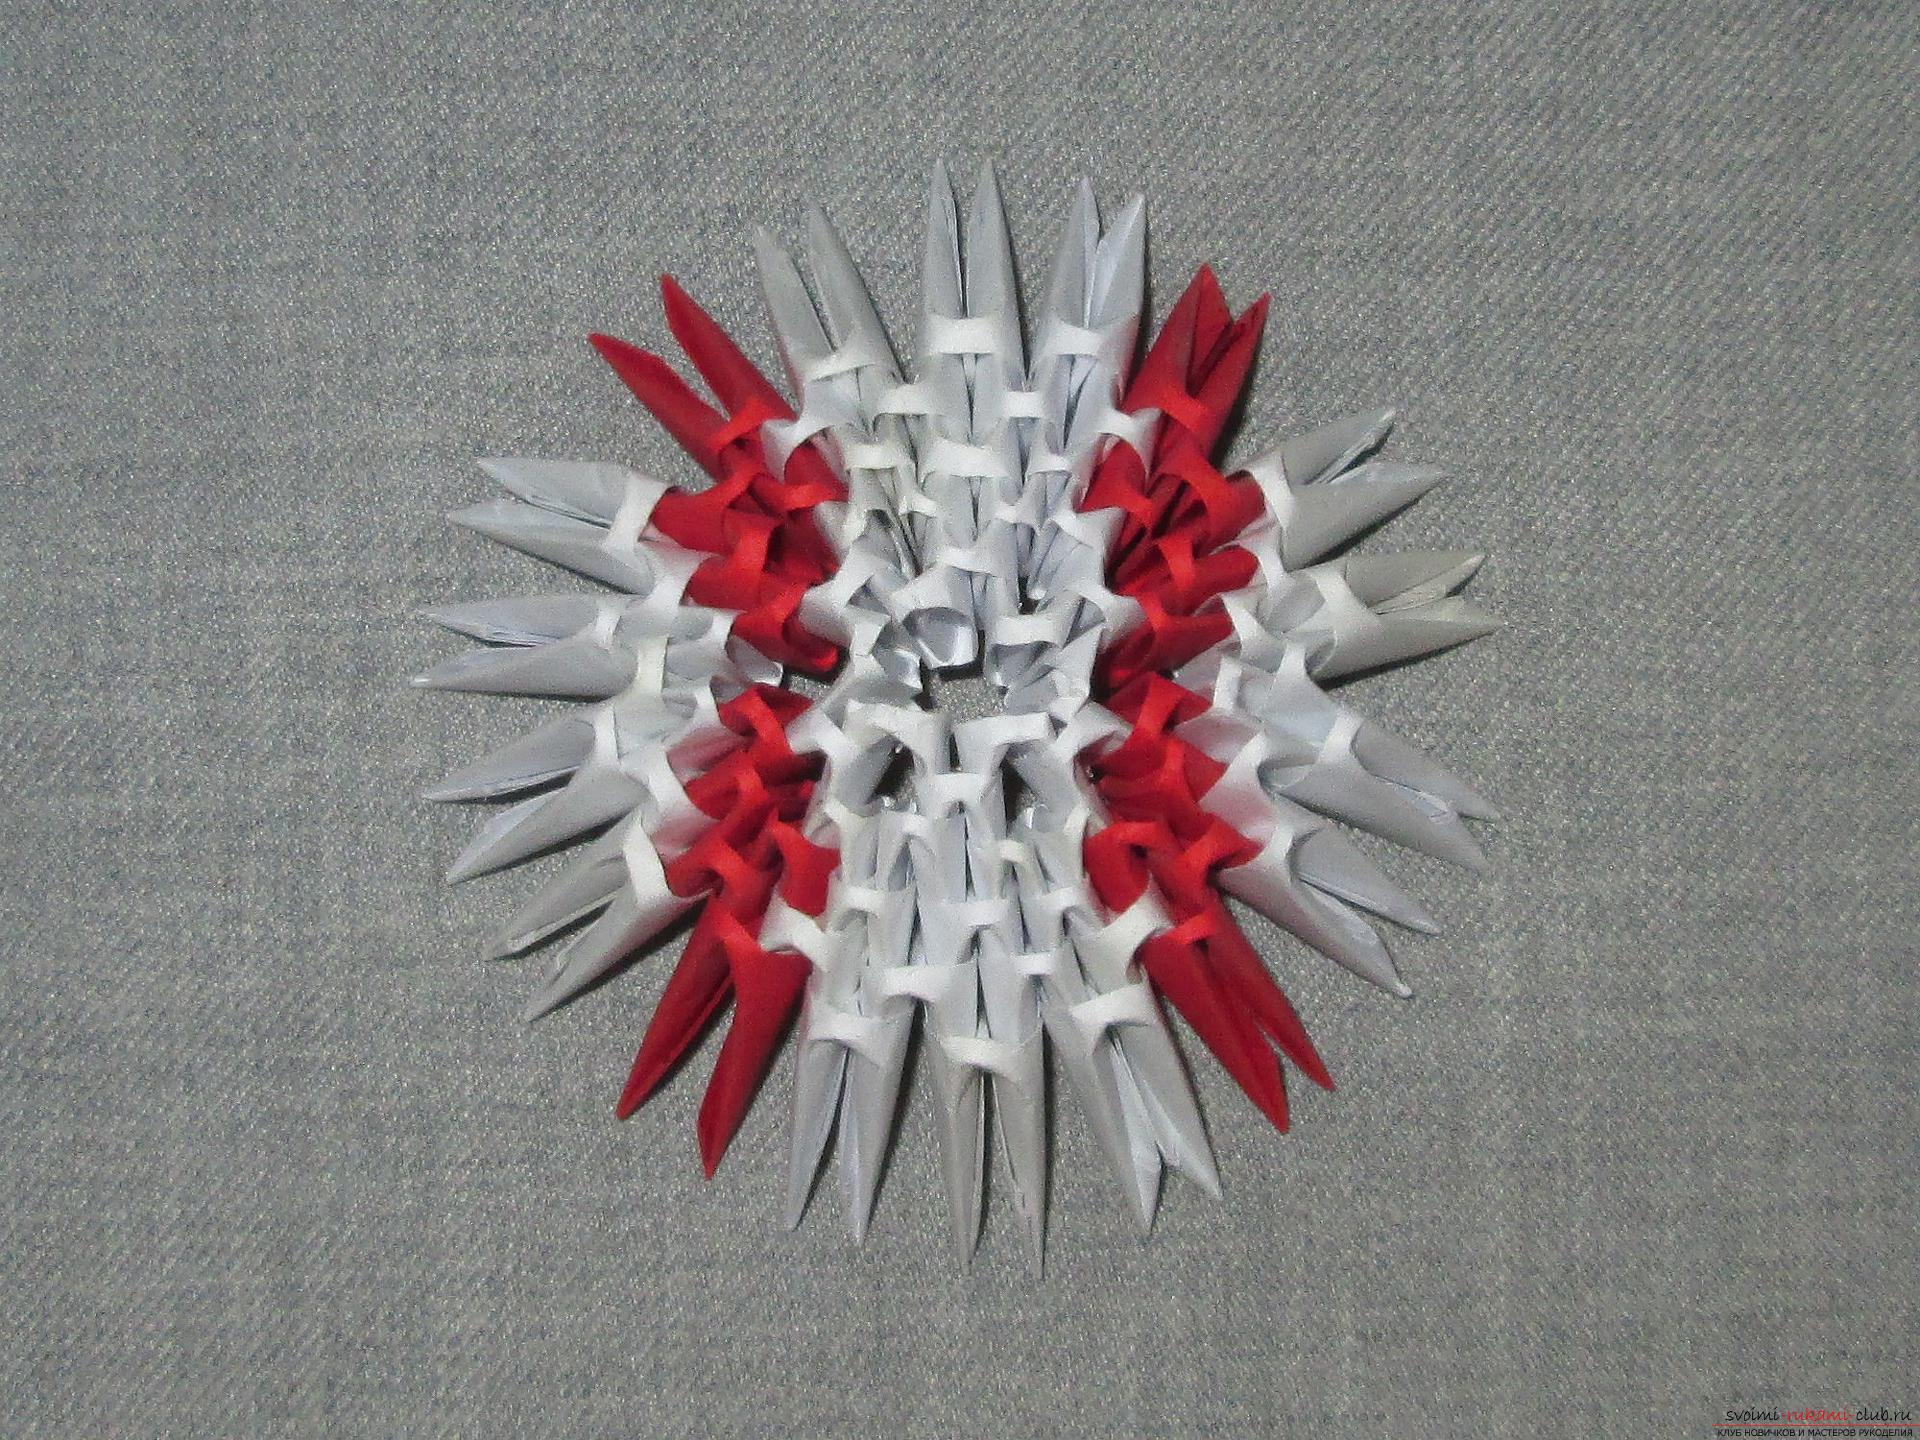 Этот мастер-класс расскажет как сделать своими руками из модульных оригами из бумаги русскую красавицу.. Фото №15